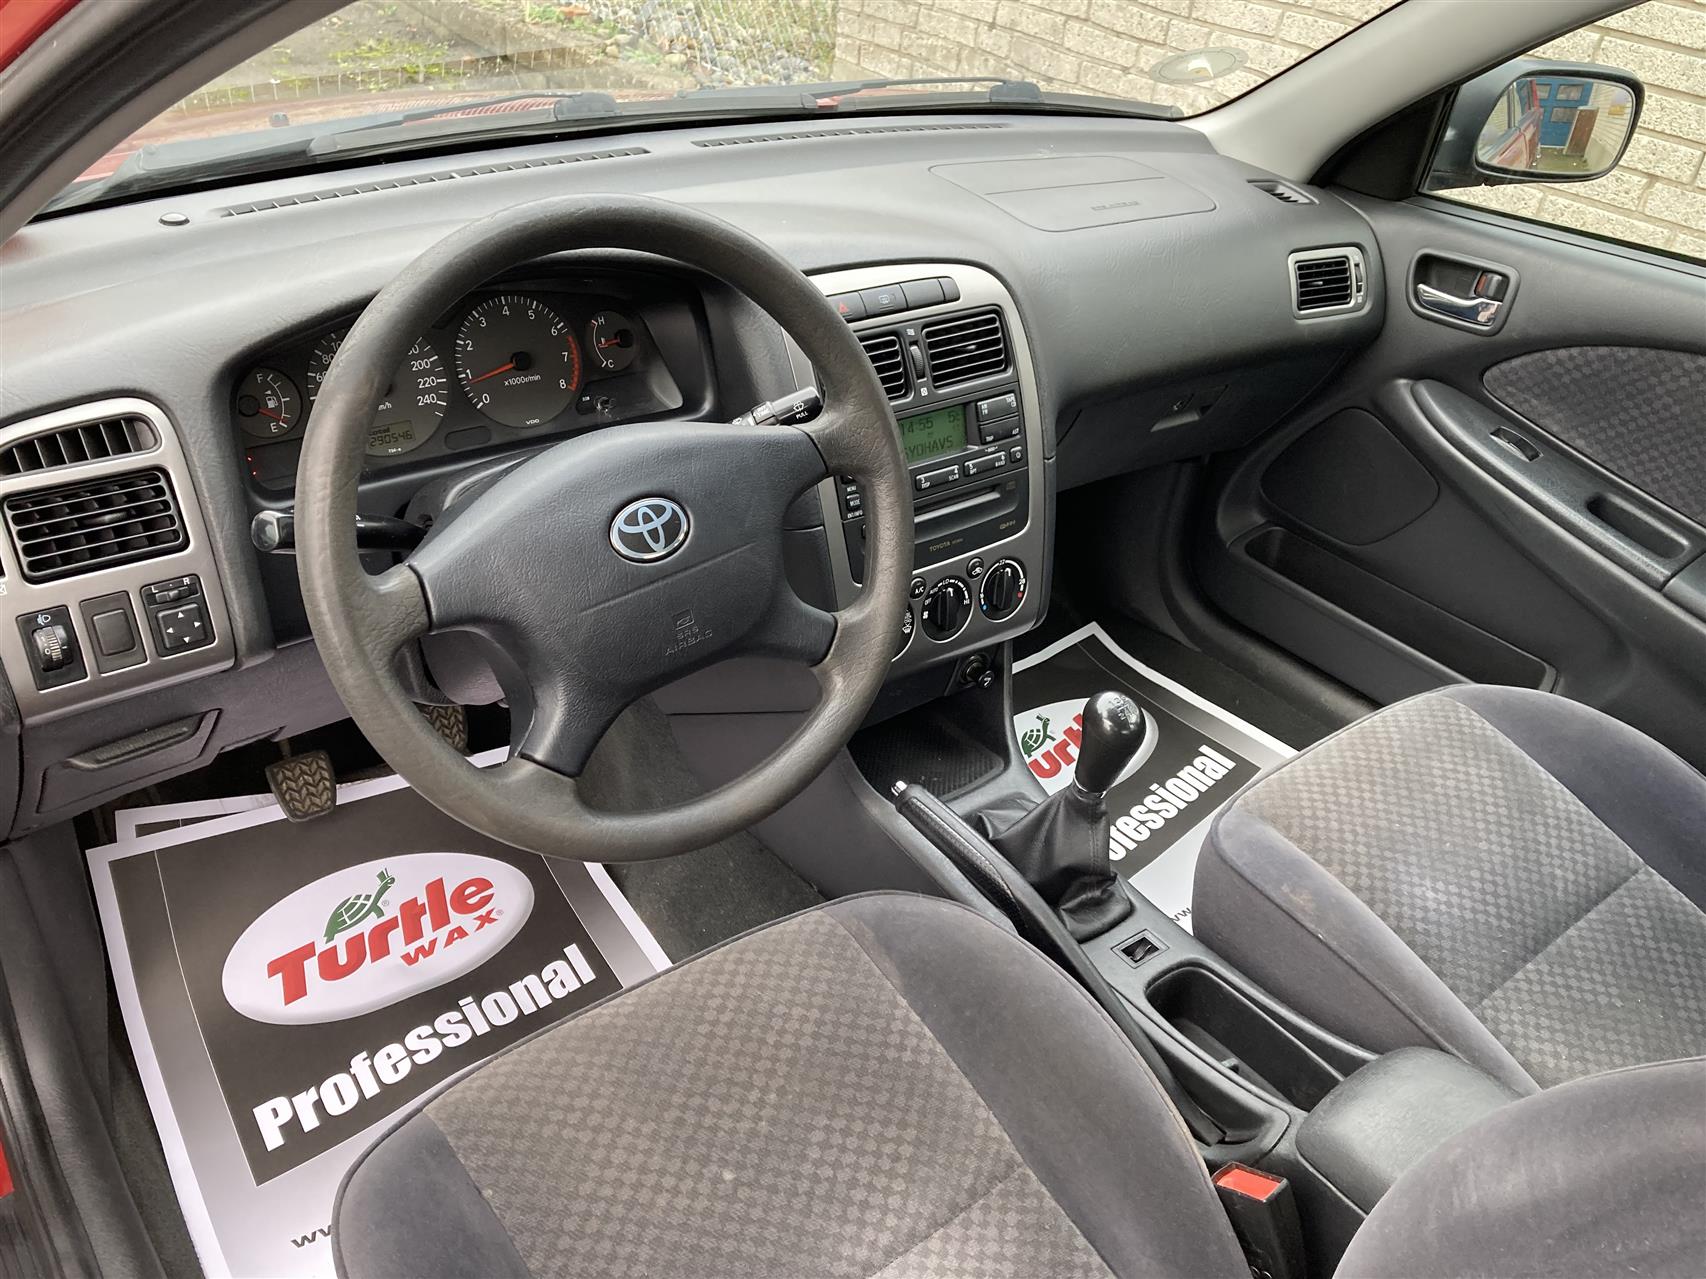 Billede af Toyota Avensis 1,8 Linea Terra 129HK